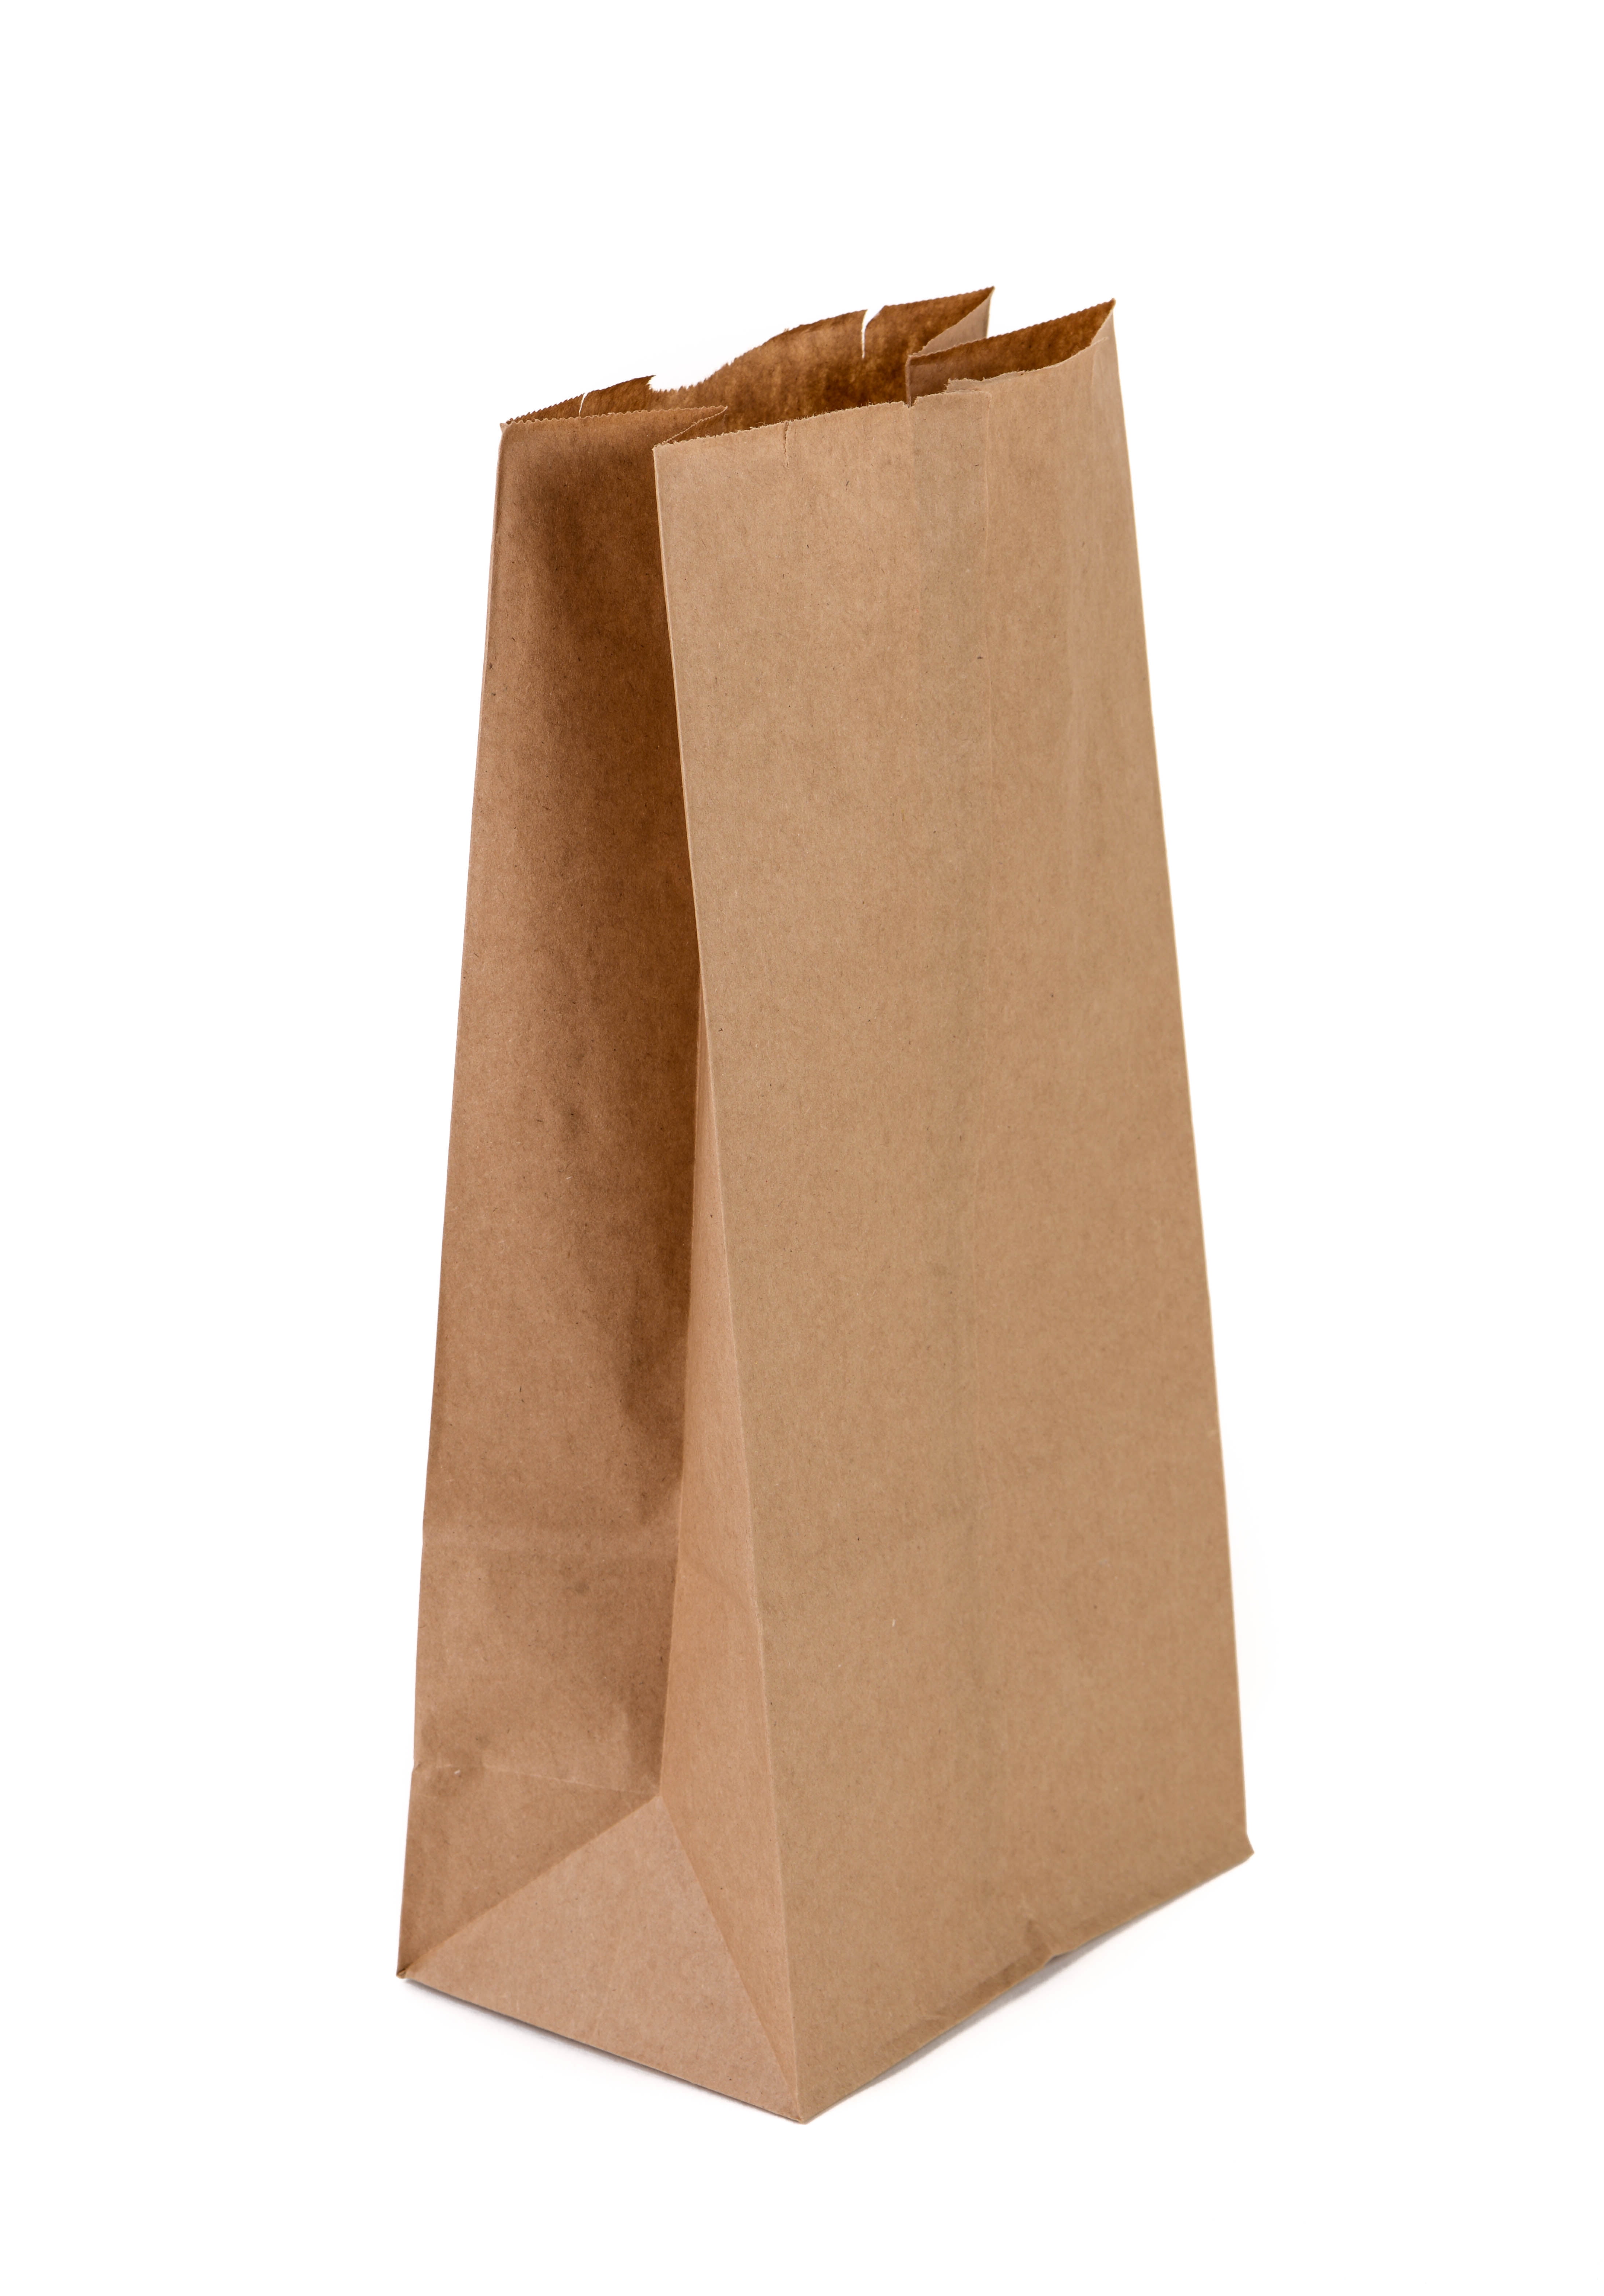 4 1/16 X 8 1/4 25 Kraft Bag Side Gusset Paper Bag